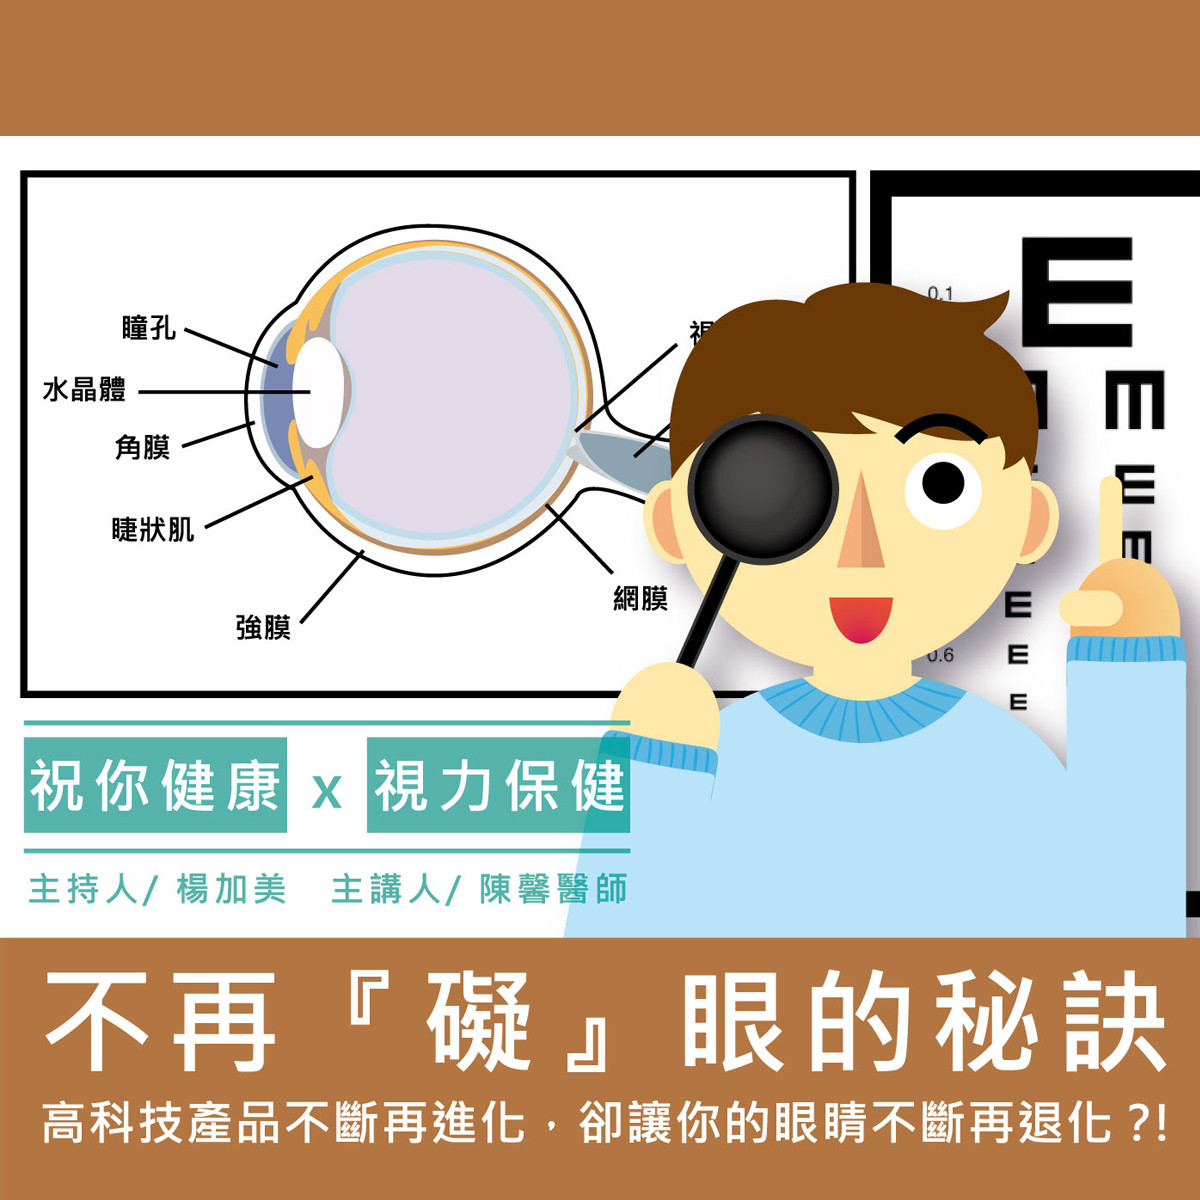 【祝你健康】視力保健 - 3.乾眼症封面圖